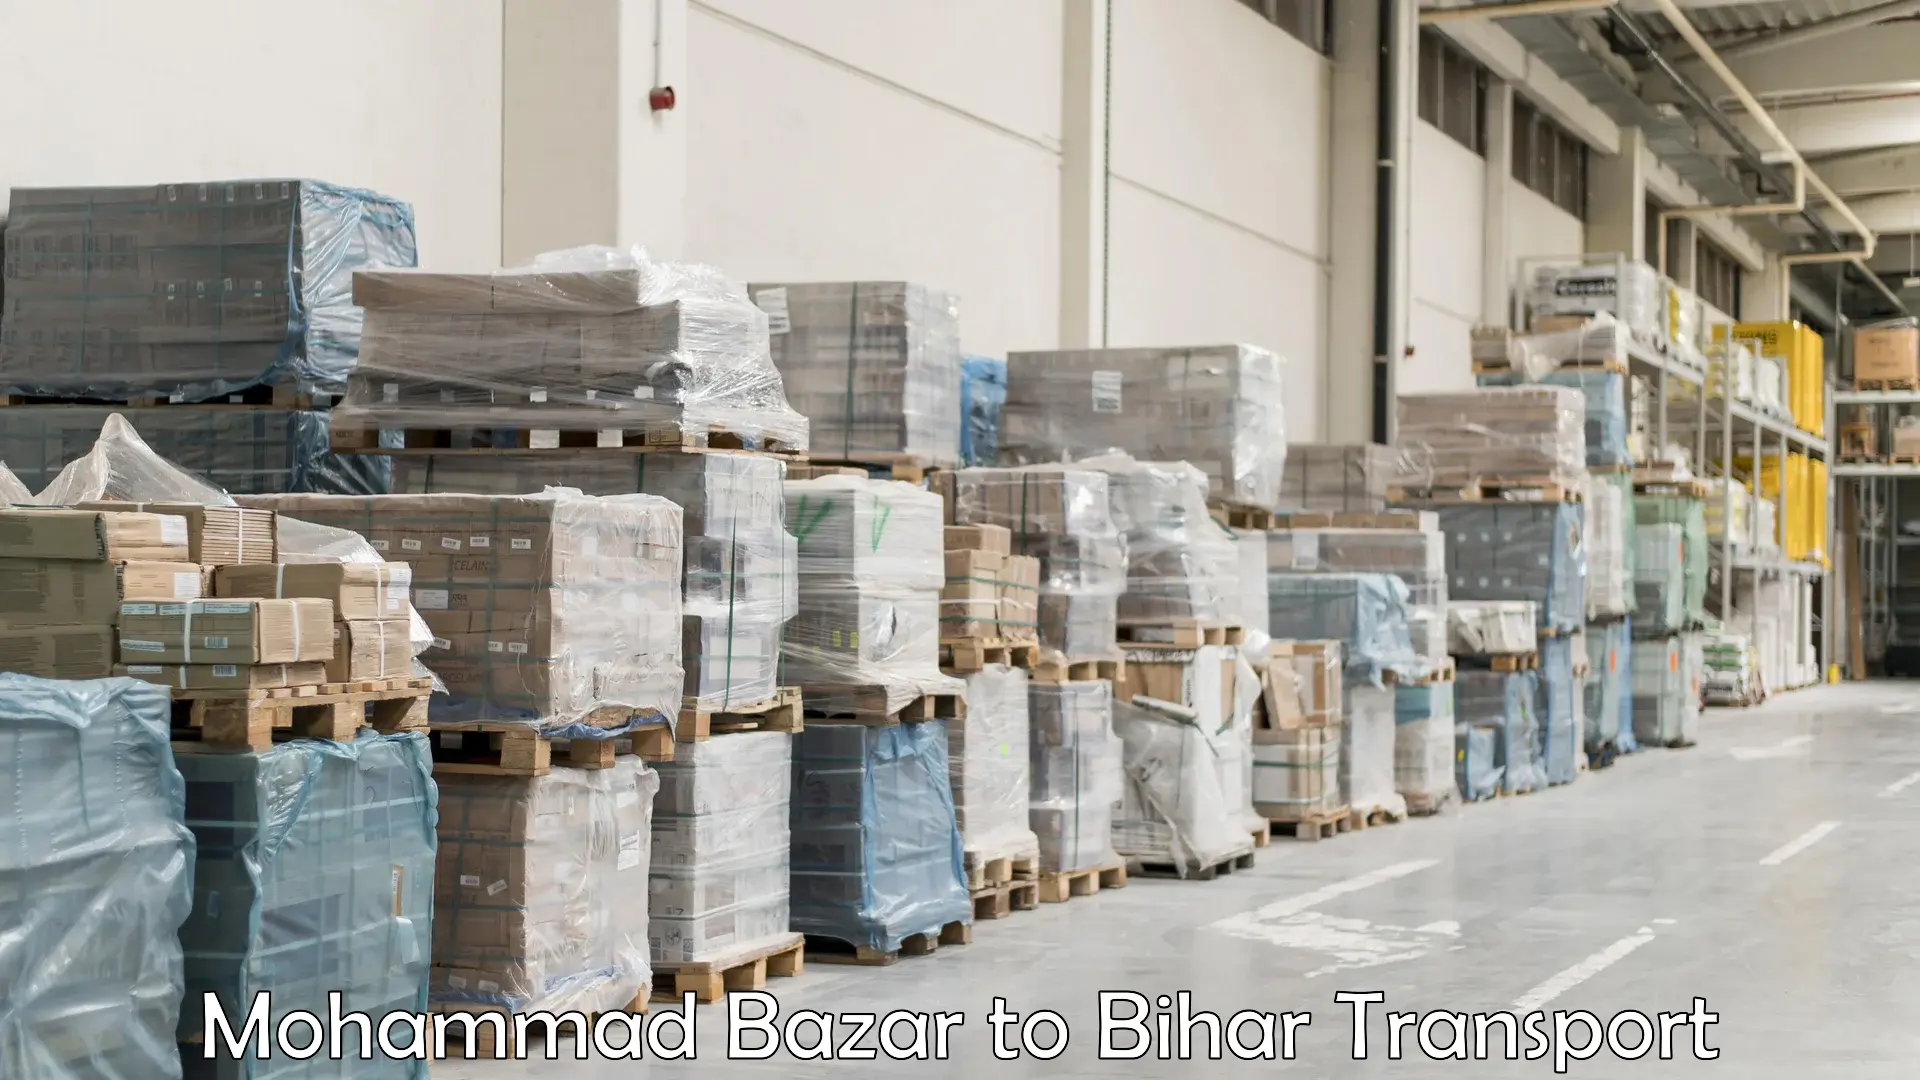 Shipping services Mohammad Bazar to Katihar